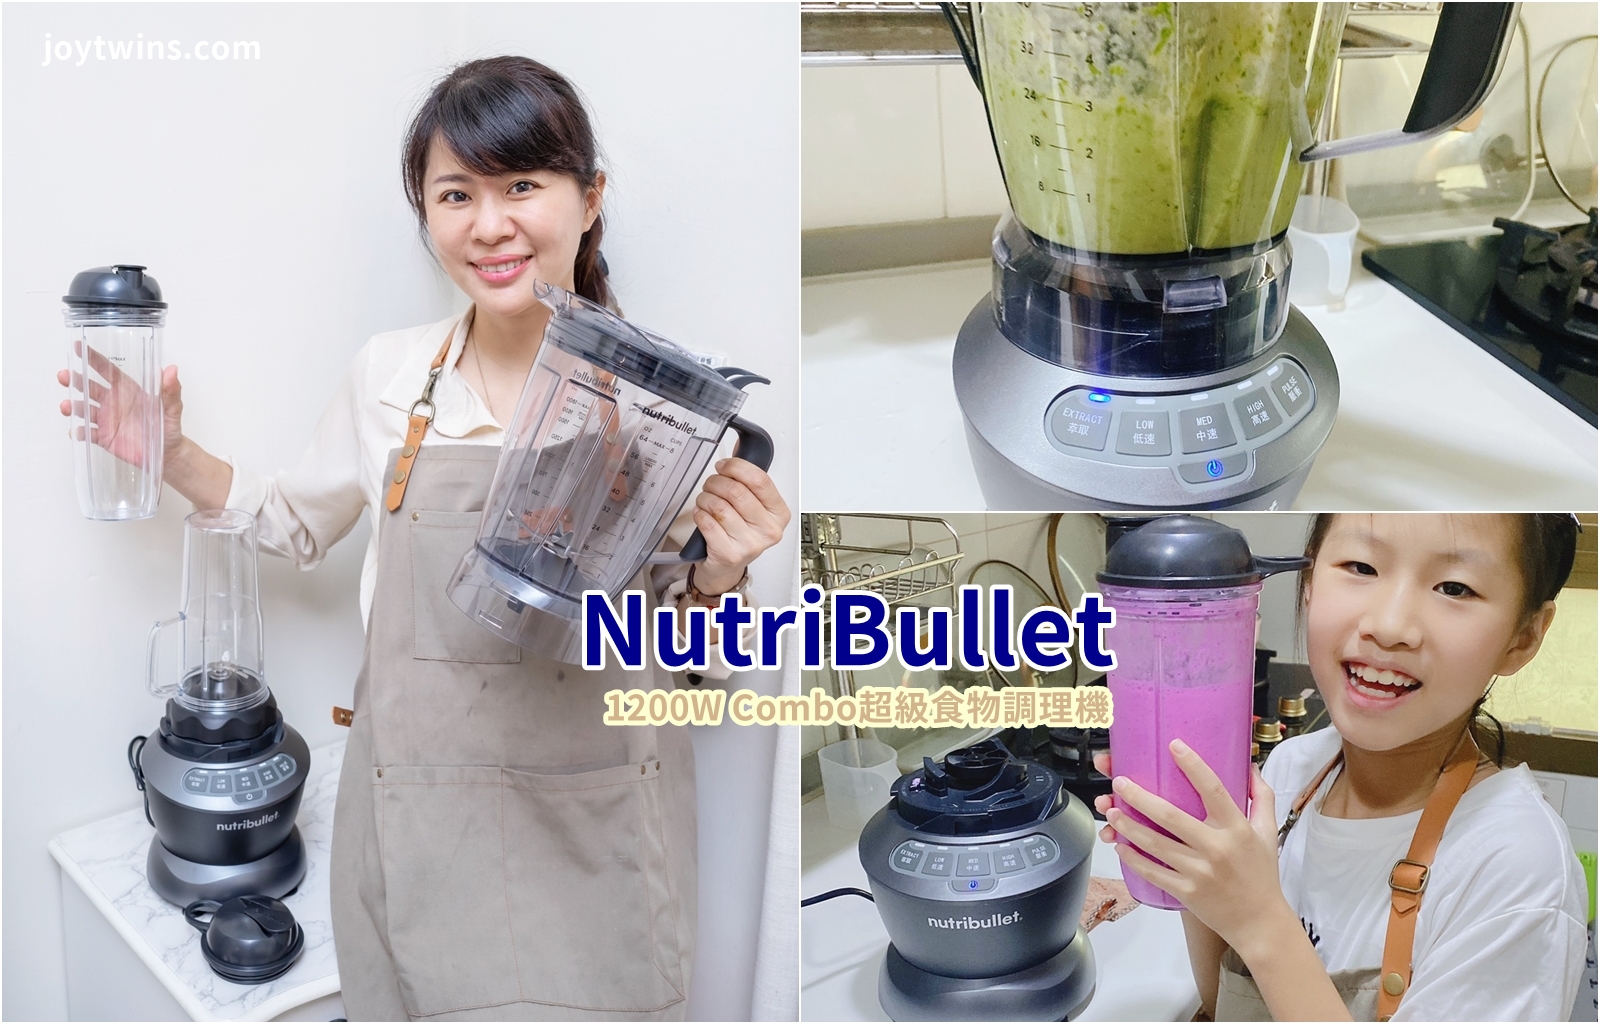 NutriBullet 美國果汁機領導品牌 1200W Combo超級食物調理機 強勁馬達秒速創造綿密口感 輕巧加上大容量一次滿足